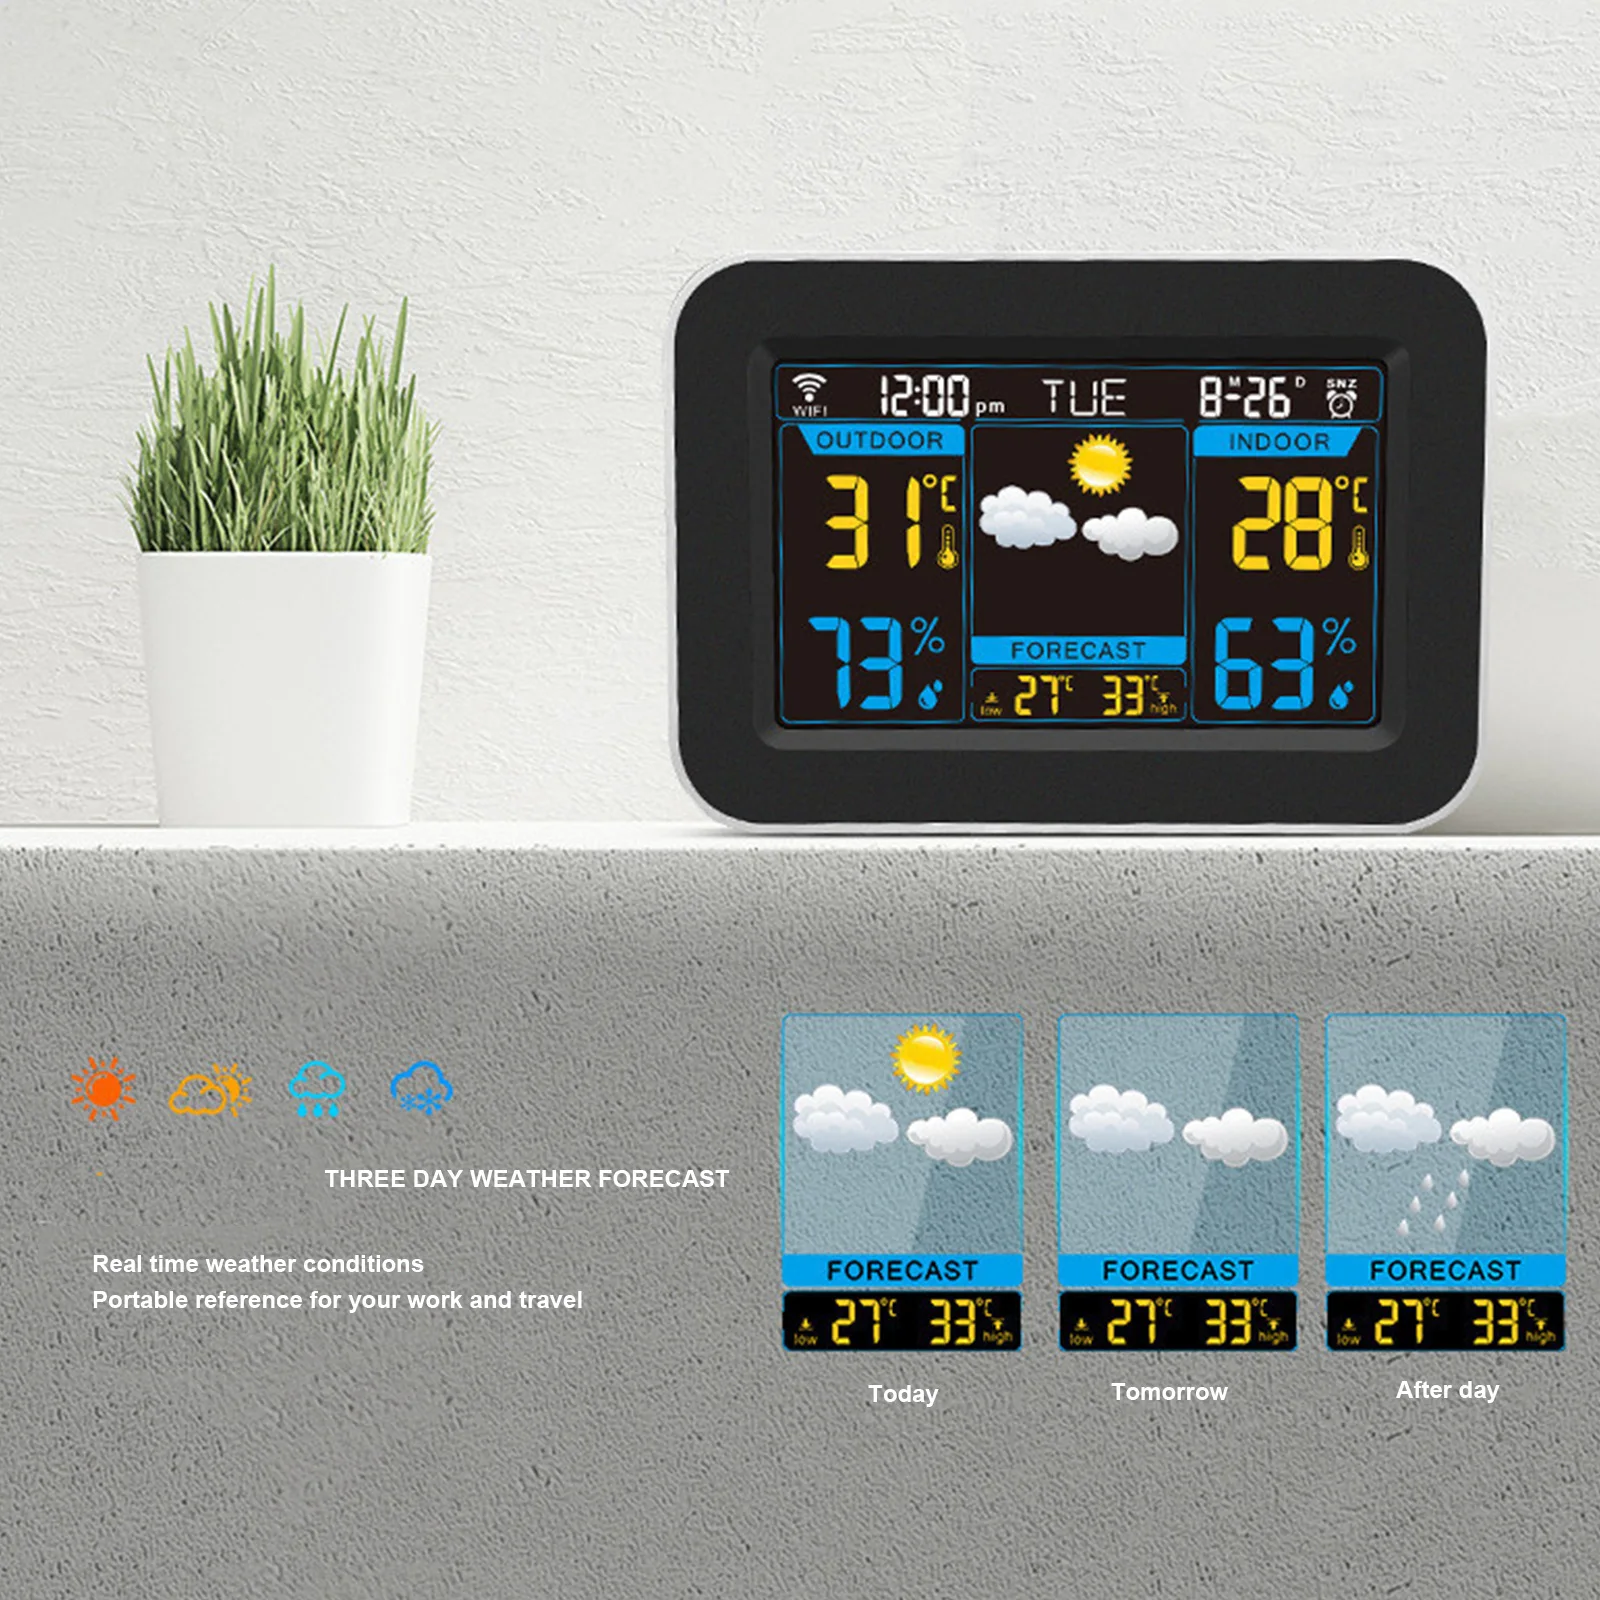 Wi-Fi Метеостанция, часы, приложение для управления Цифровым монитором температуры и влажности в помещении и на улице, цветной будильник, календарь погоды